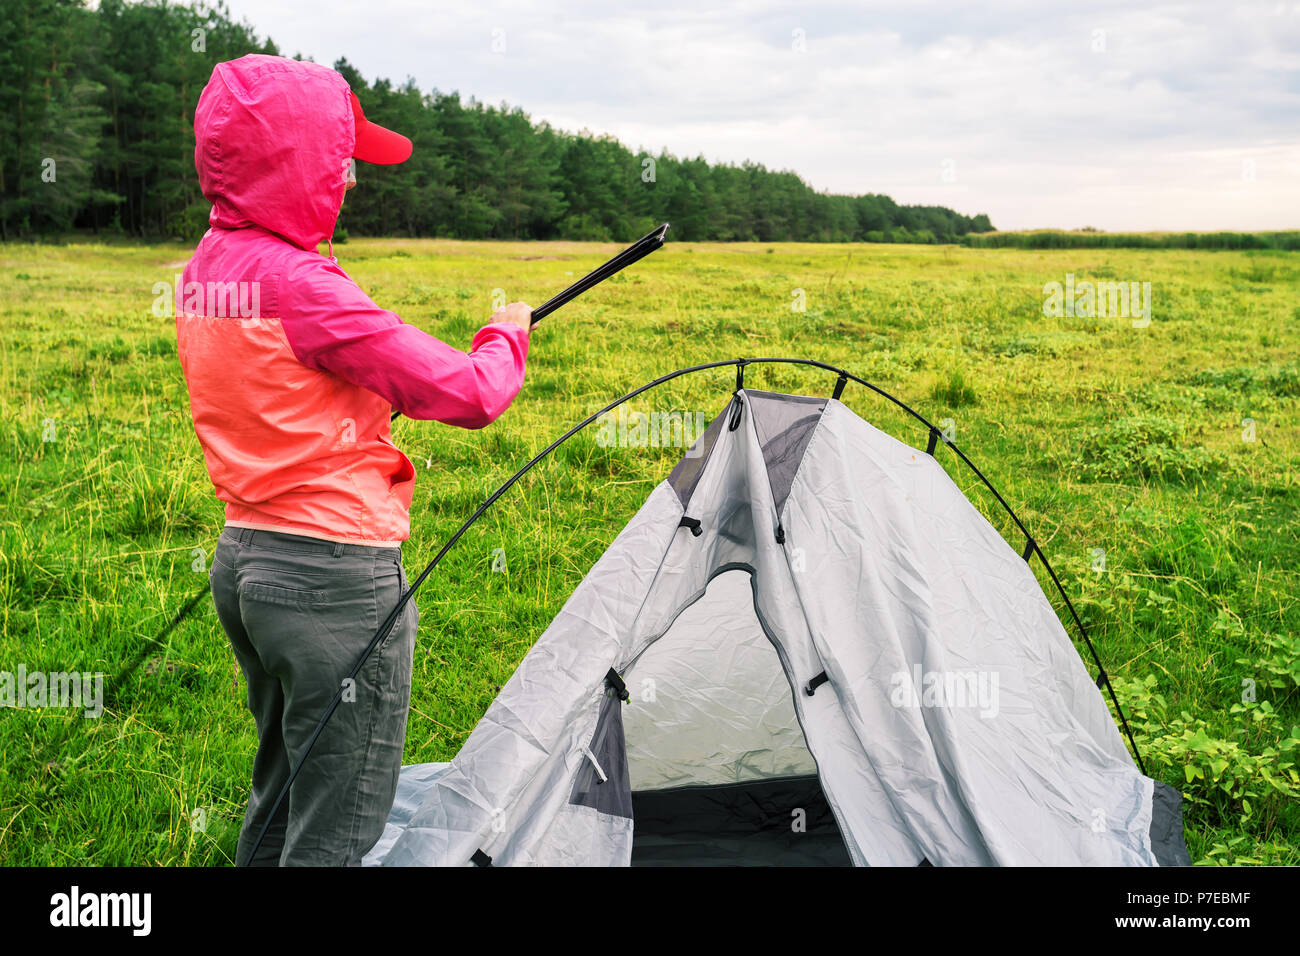 Fille dans un dossier rose avec une capuche met en place une tente Banque D'Images